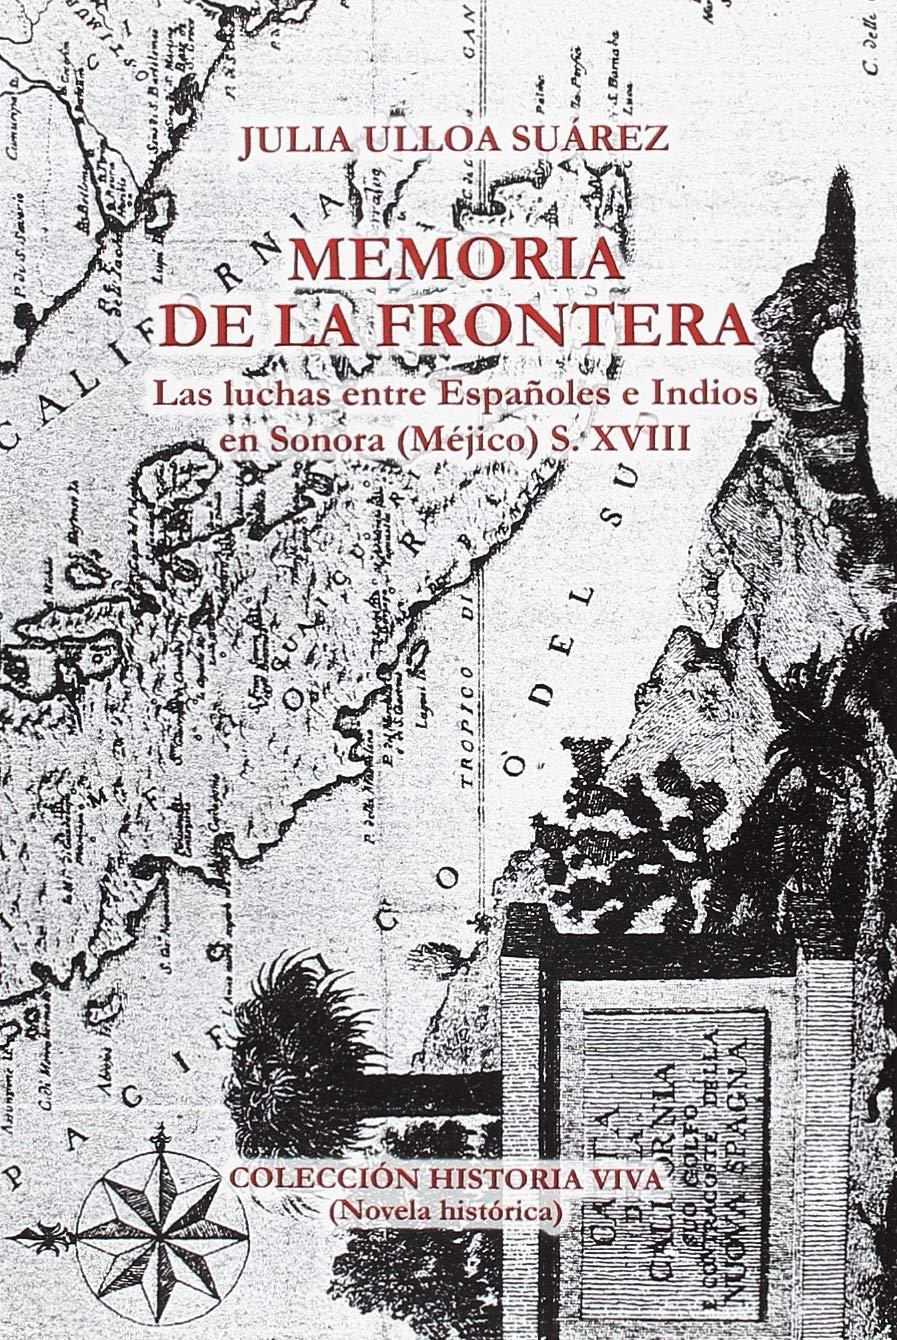 Memoria de la frontera. Las luchas entre españoles e indios en Sonora (Méjico) S.XVIII